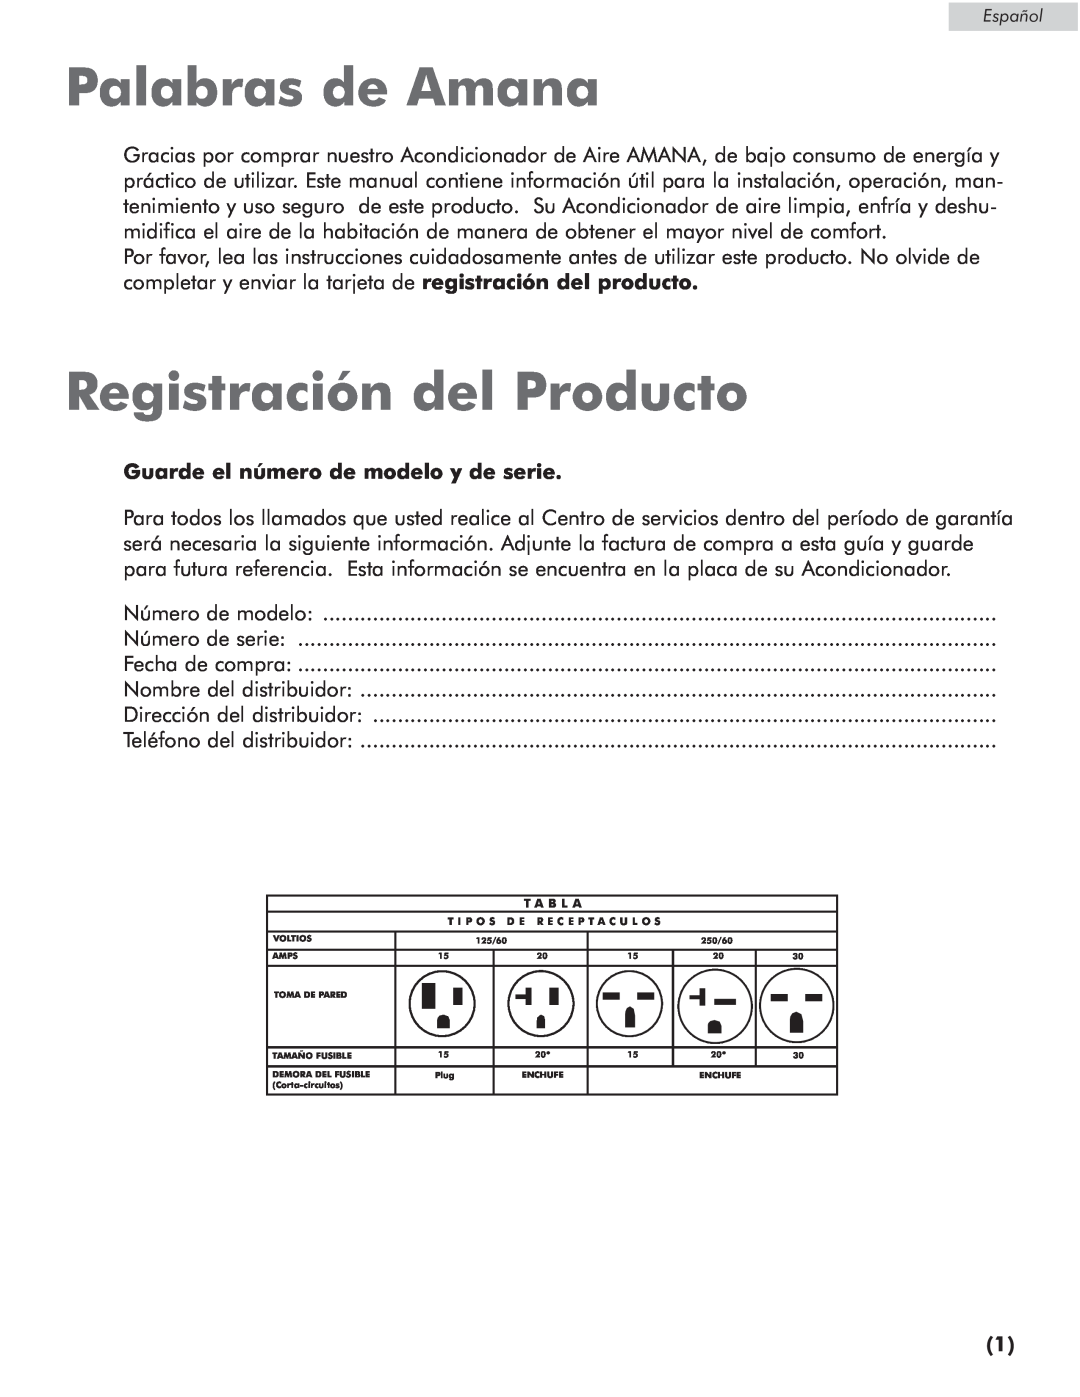 Amana AP076E manual Palabras de Amana, Registración del Producto, Guarde el número de modelo y de serie 